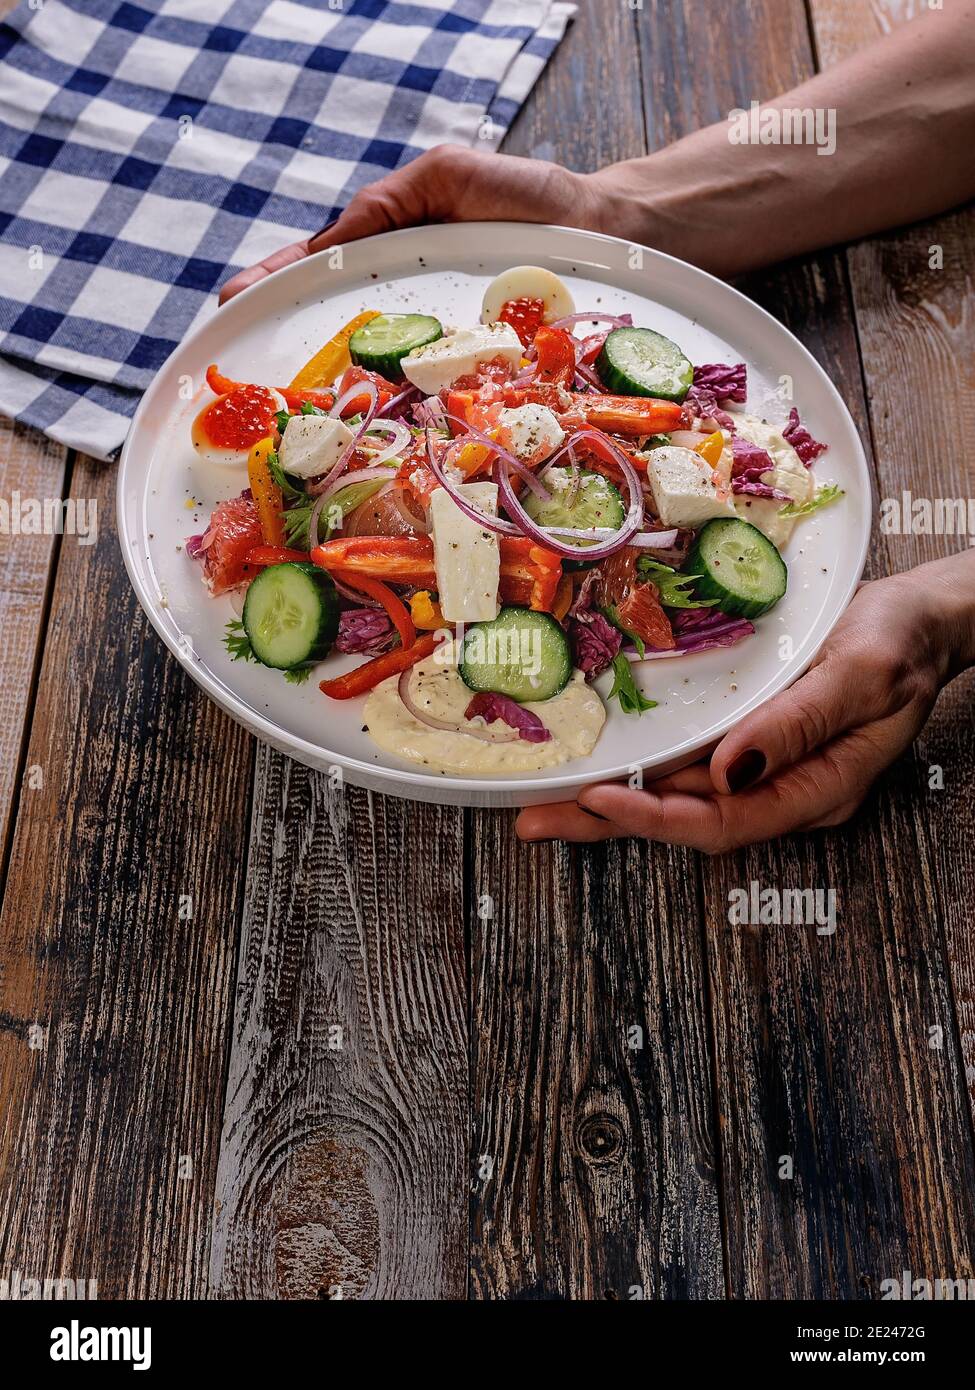 Weibliche Hände halten einen Teller mit einem Salat aus Gemüse und leicht gesalzenem Fisch. Leckere und gesunde Lebensmittel. Mittelmeer oder Keto-Diät. Holzhintergrund. Stockfoto